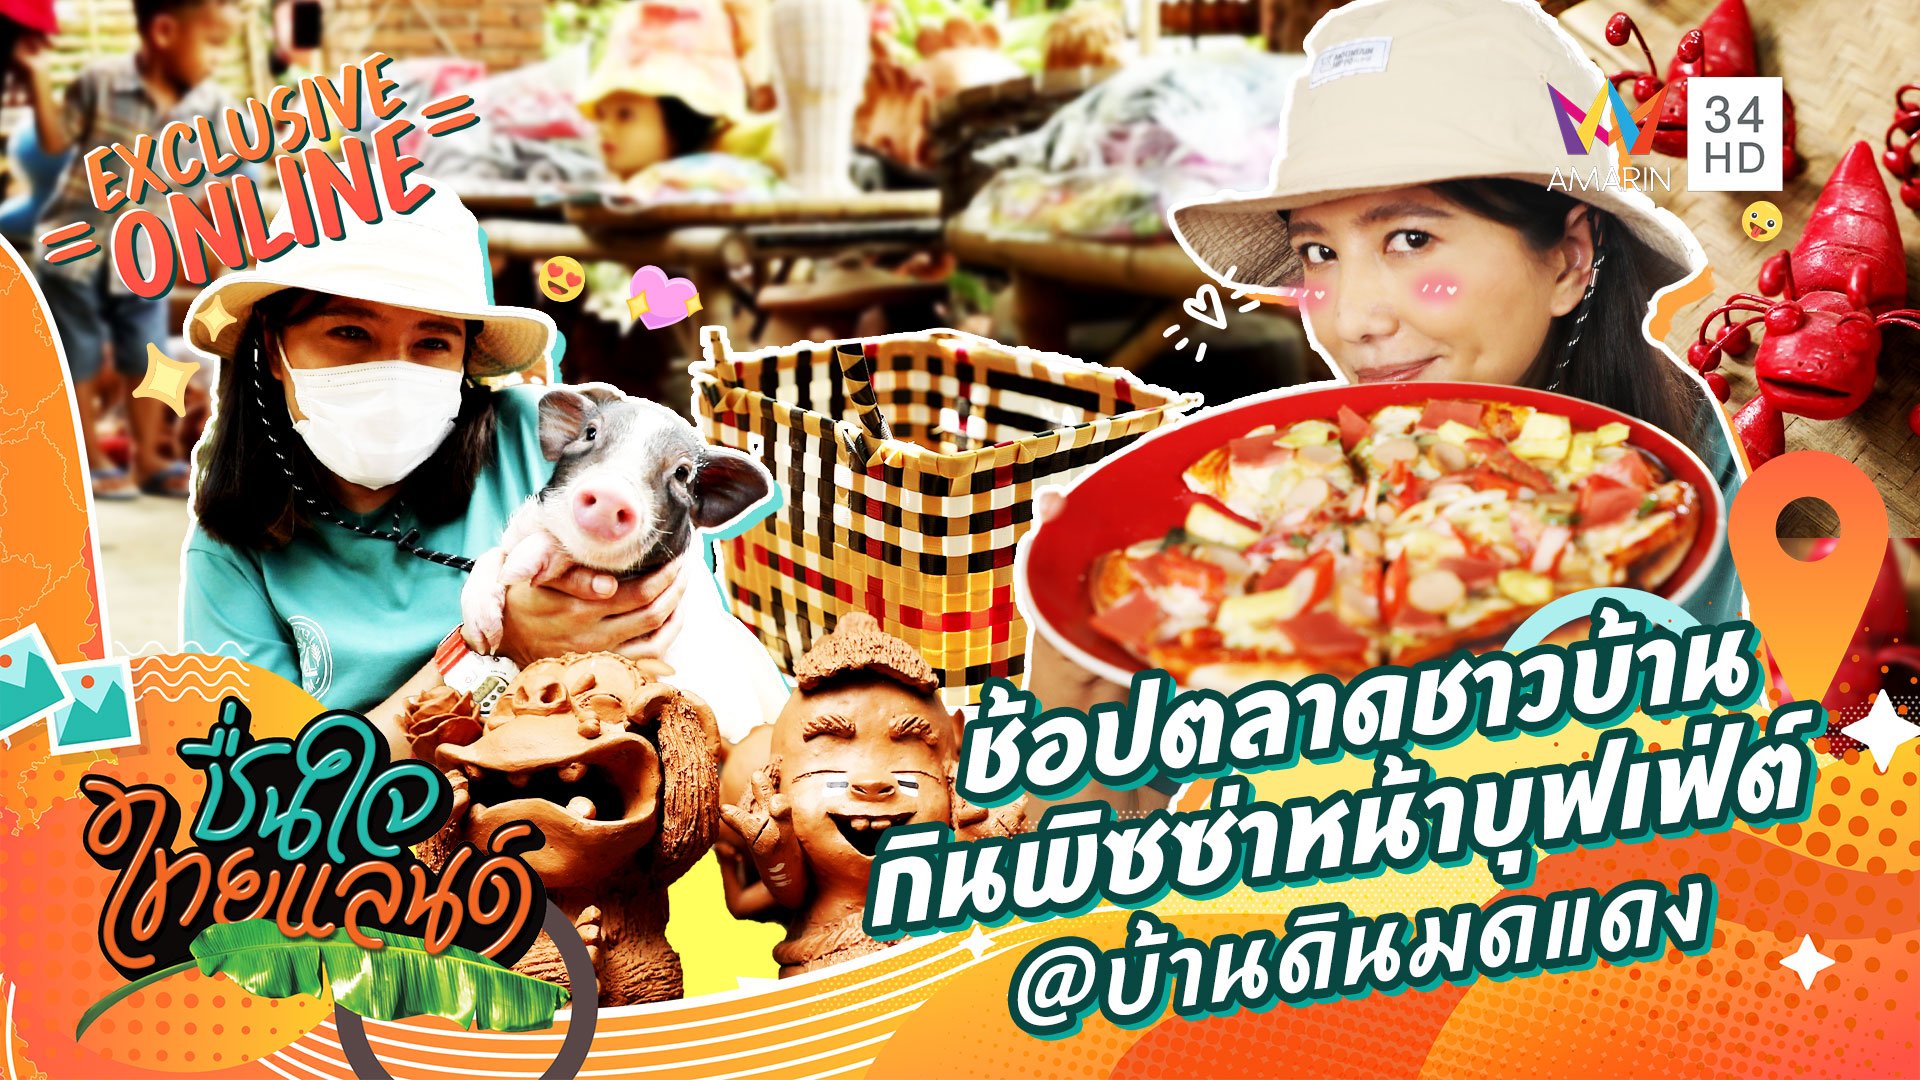 ช้อปตลาดชาวบ้าน กินพิซซ่าหน้าบุฟเฟ่ต์ @บ้านดินมดแดง จ.ลพบุรี | ชื่นใจไทยแลนด์ | 9 ส.ค. 65 | AMARIN TVHD34